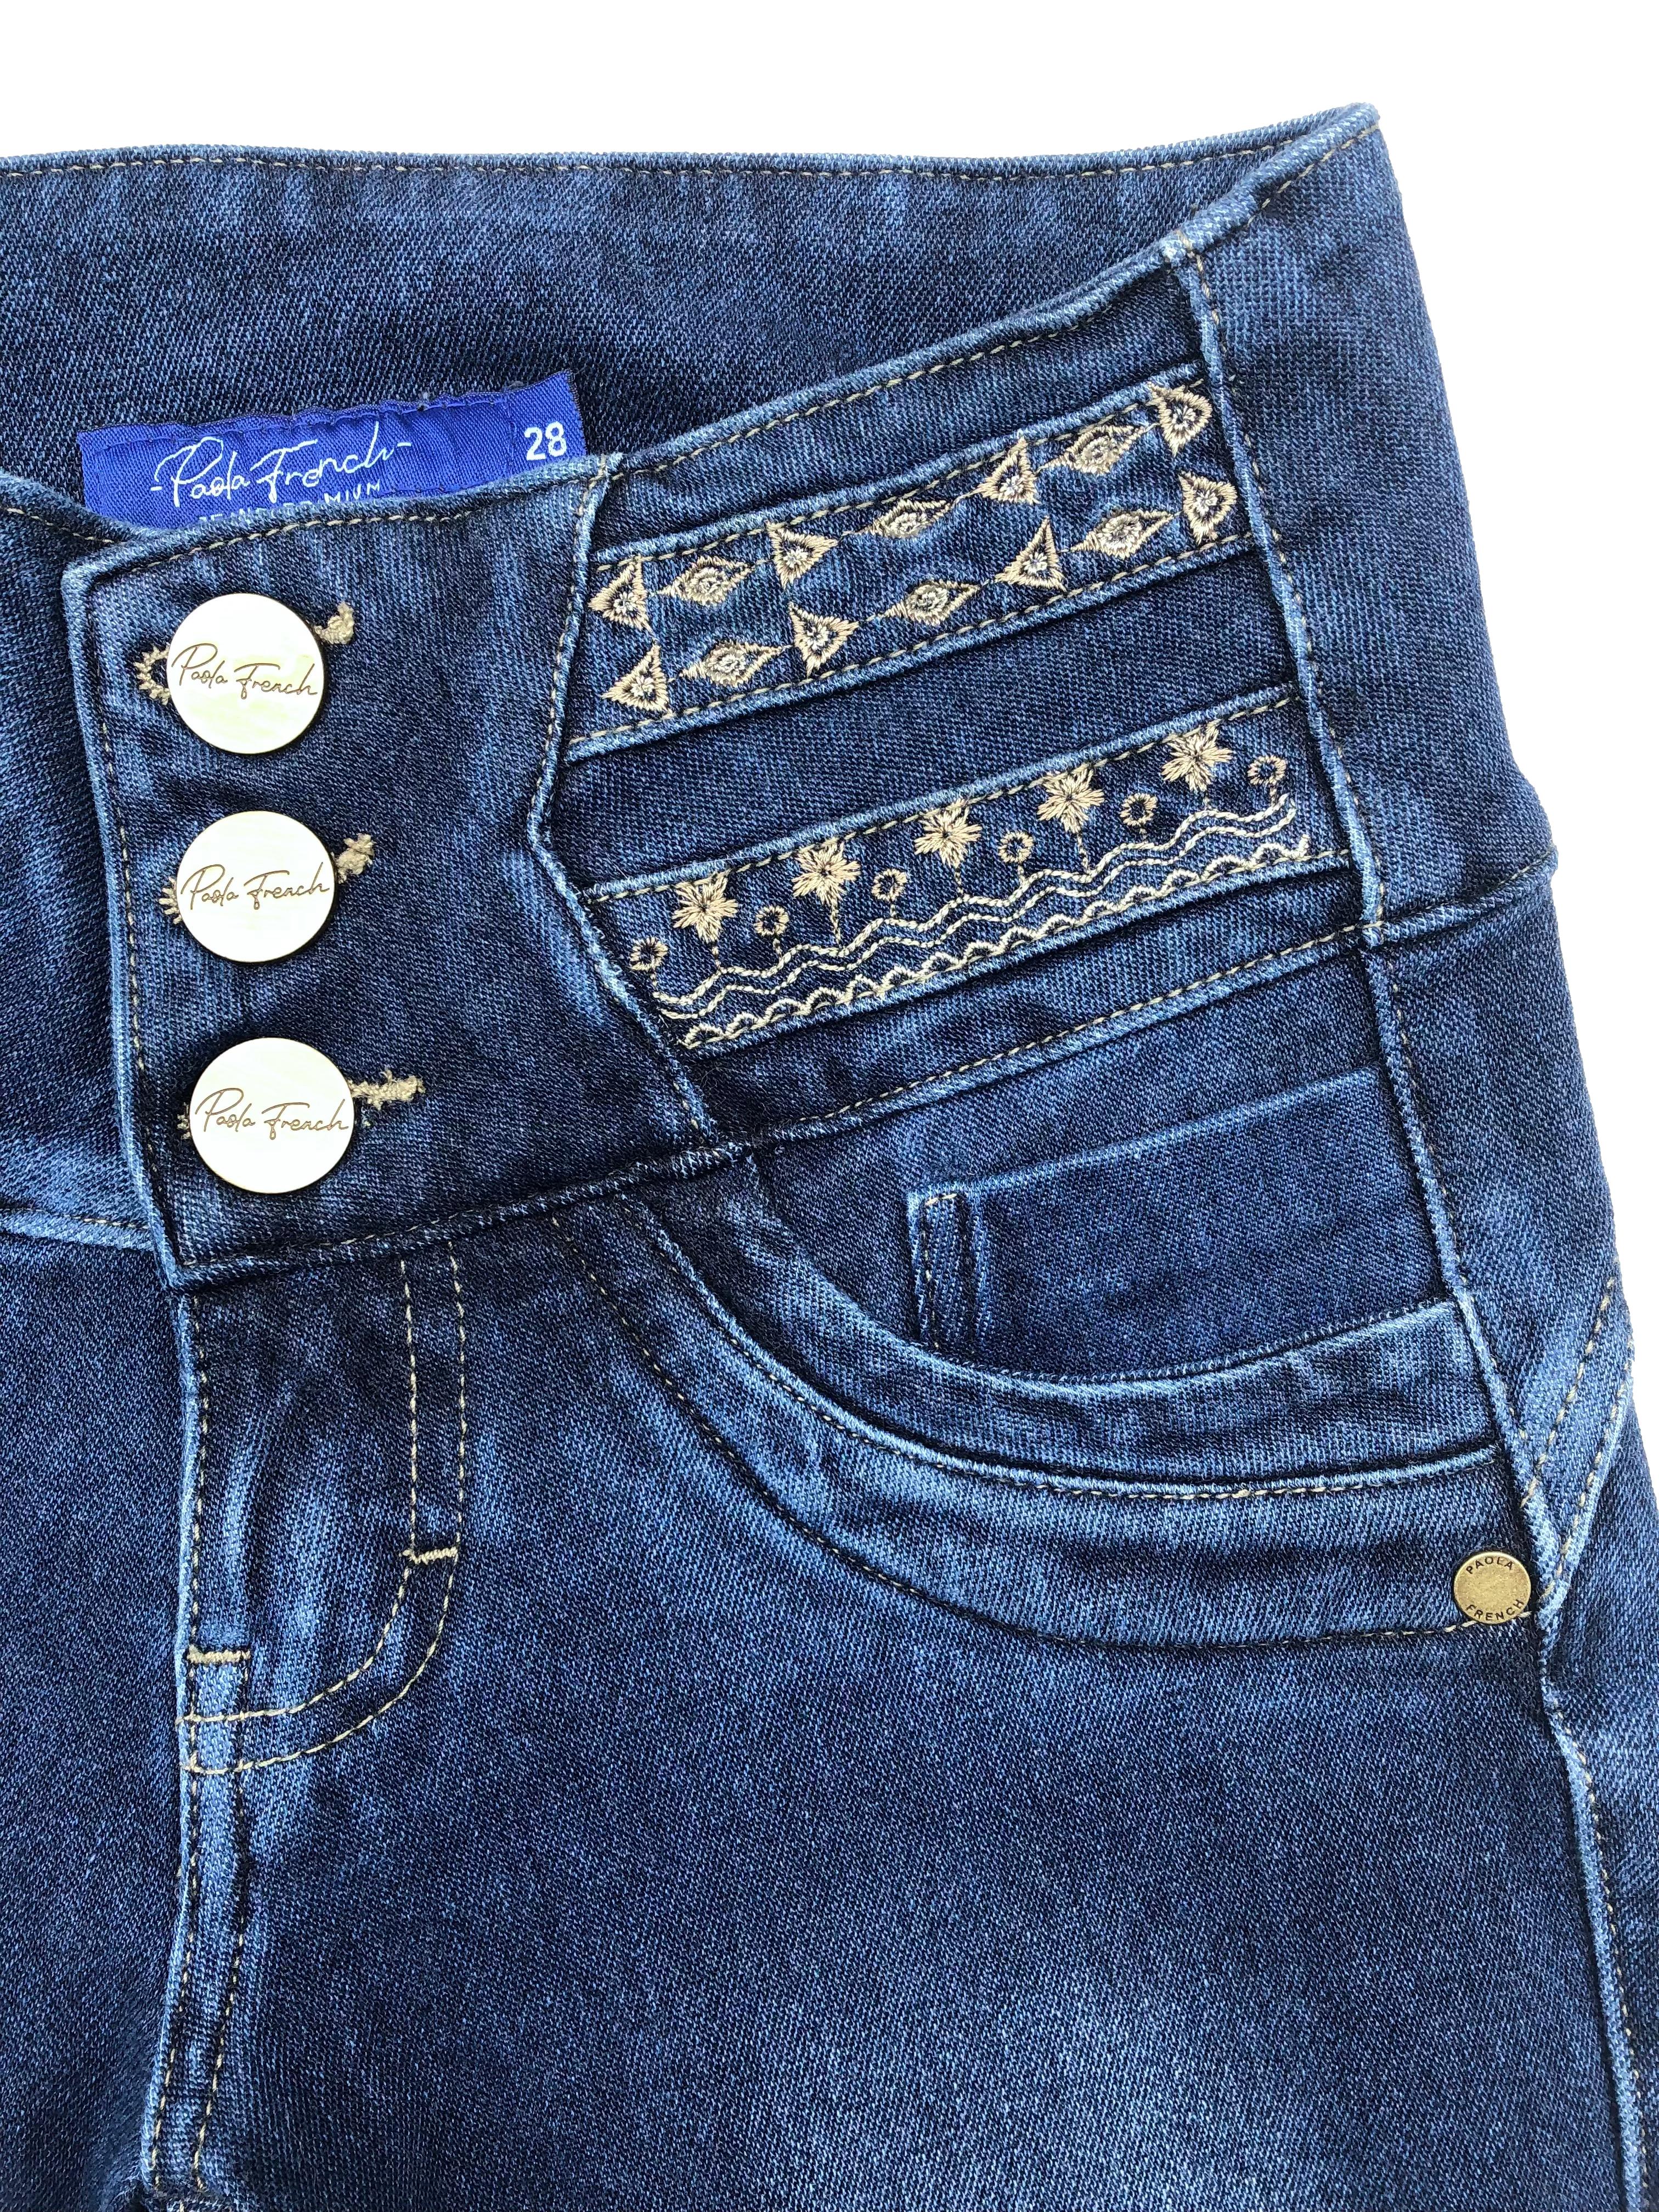 Skinny jean azul Paola French, tela stretch con focalizado, pretina ancha con bordado y botones metálicos, falsos bolsillos y entalle posterior con pinzas. Cintura 64cm sin estirar, Tiro 21.5cm, Largo 88cm.